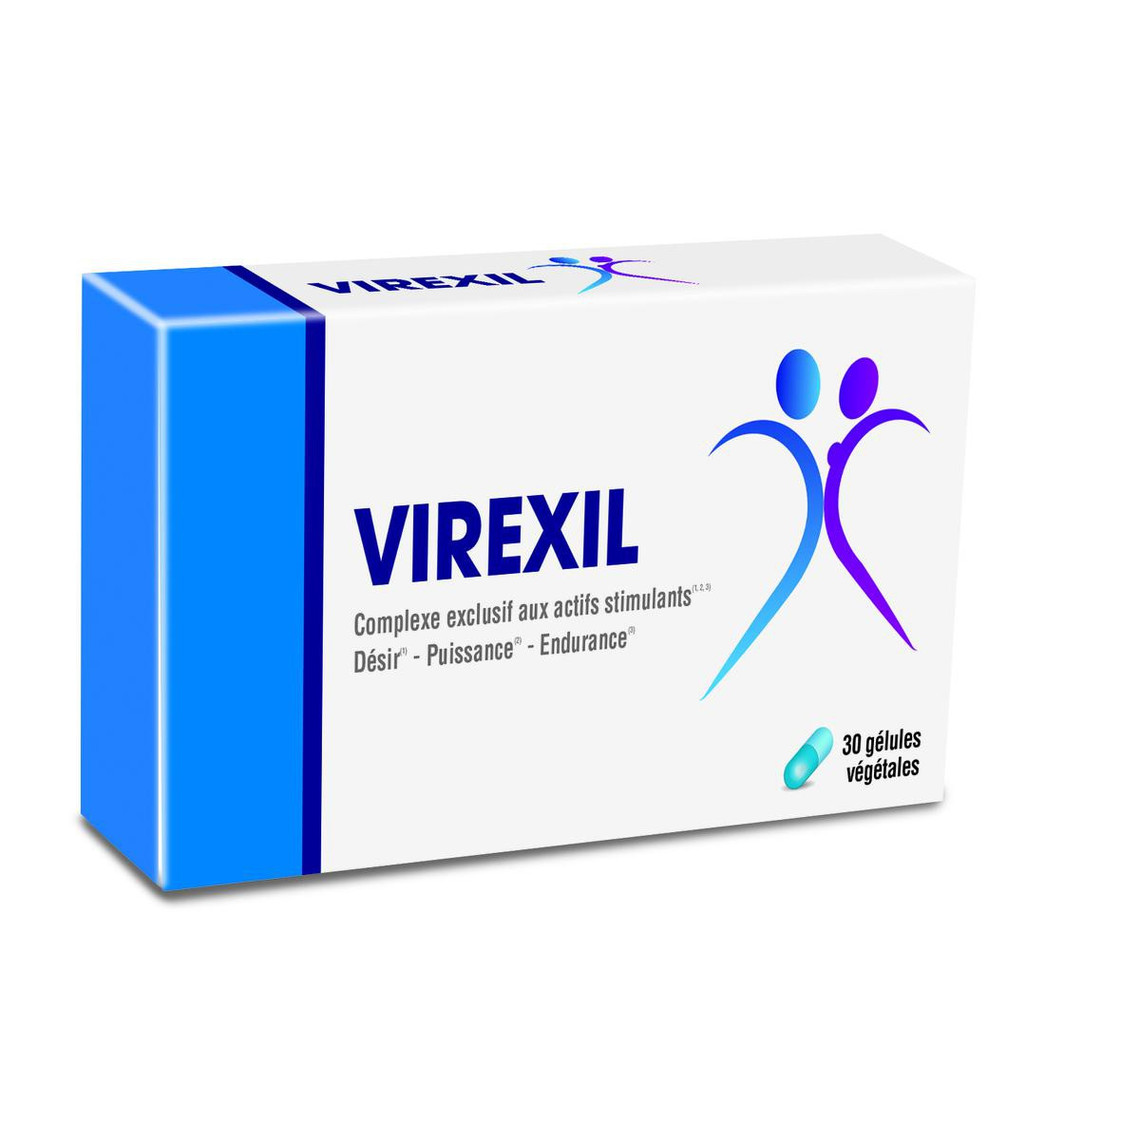 Virexil -Stimulateur Désir- Puissance - Endurance